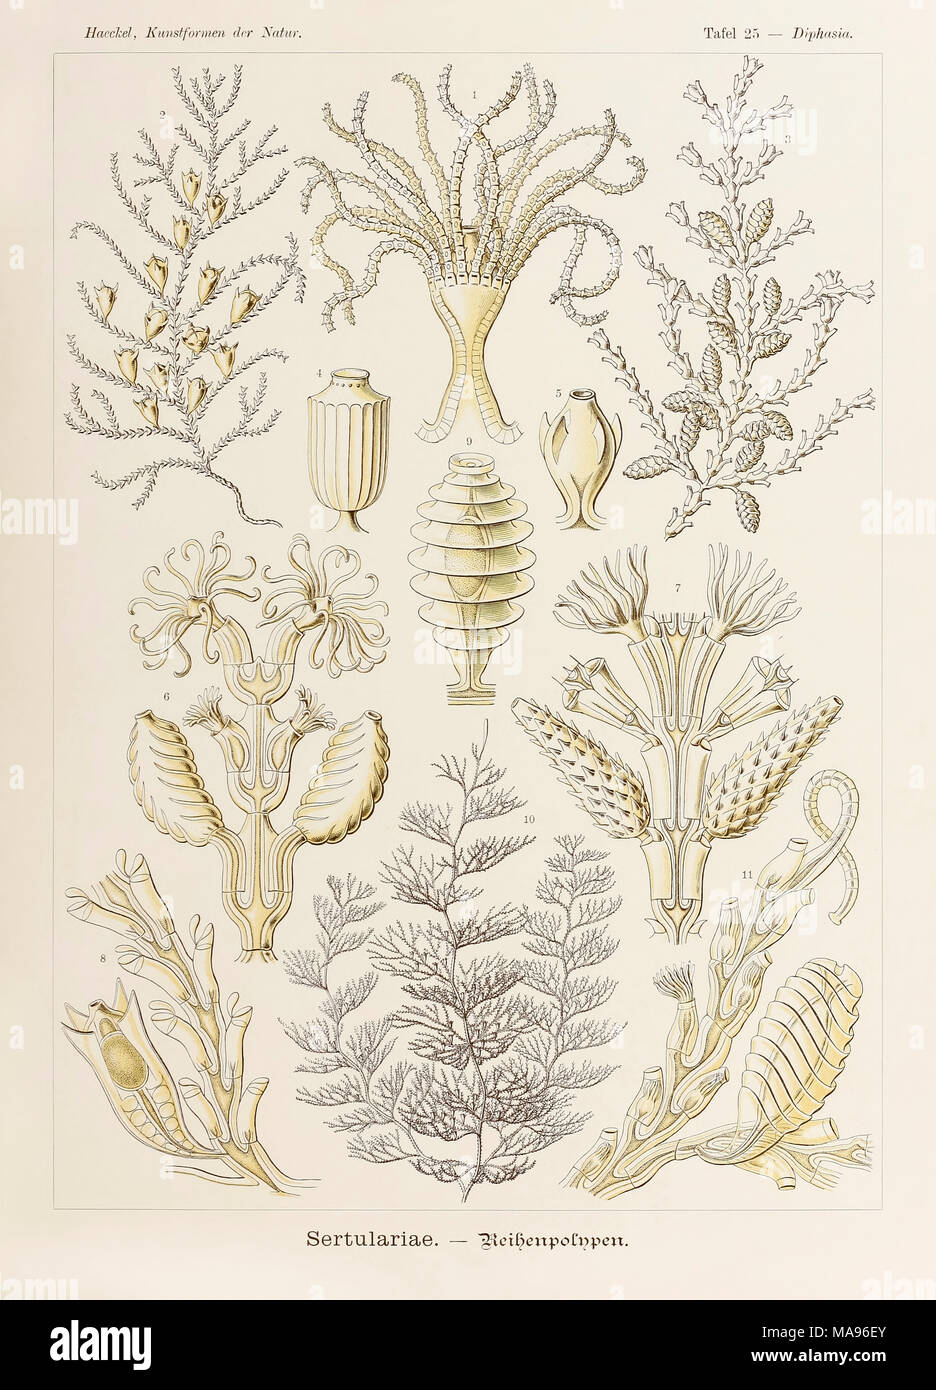 Platte 25 Diphasia Sertulariae von 'Kunstformen der Natur' (Kunstformen in der Natur), illustriert von Ernst Haeckel (1834-1919). Weitere Informationen finden Sie unten. Stockfoto